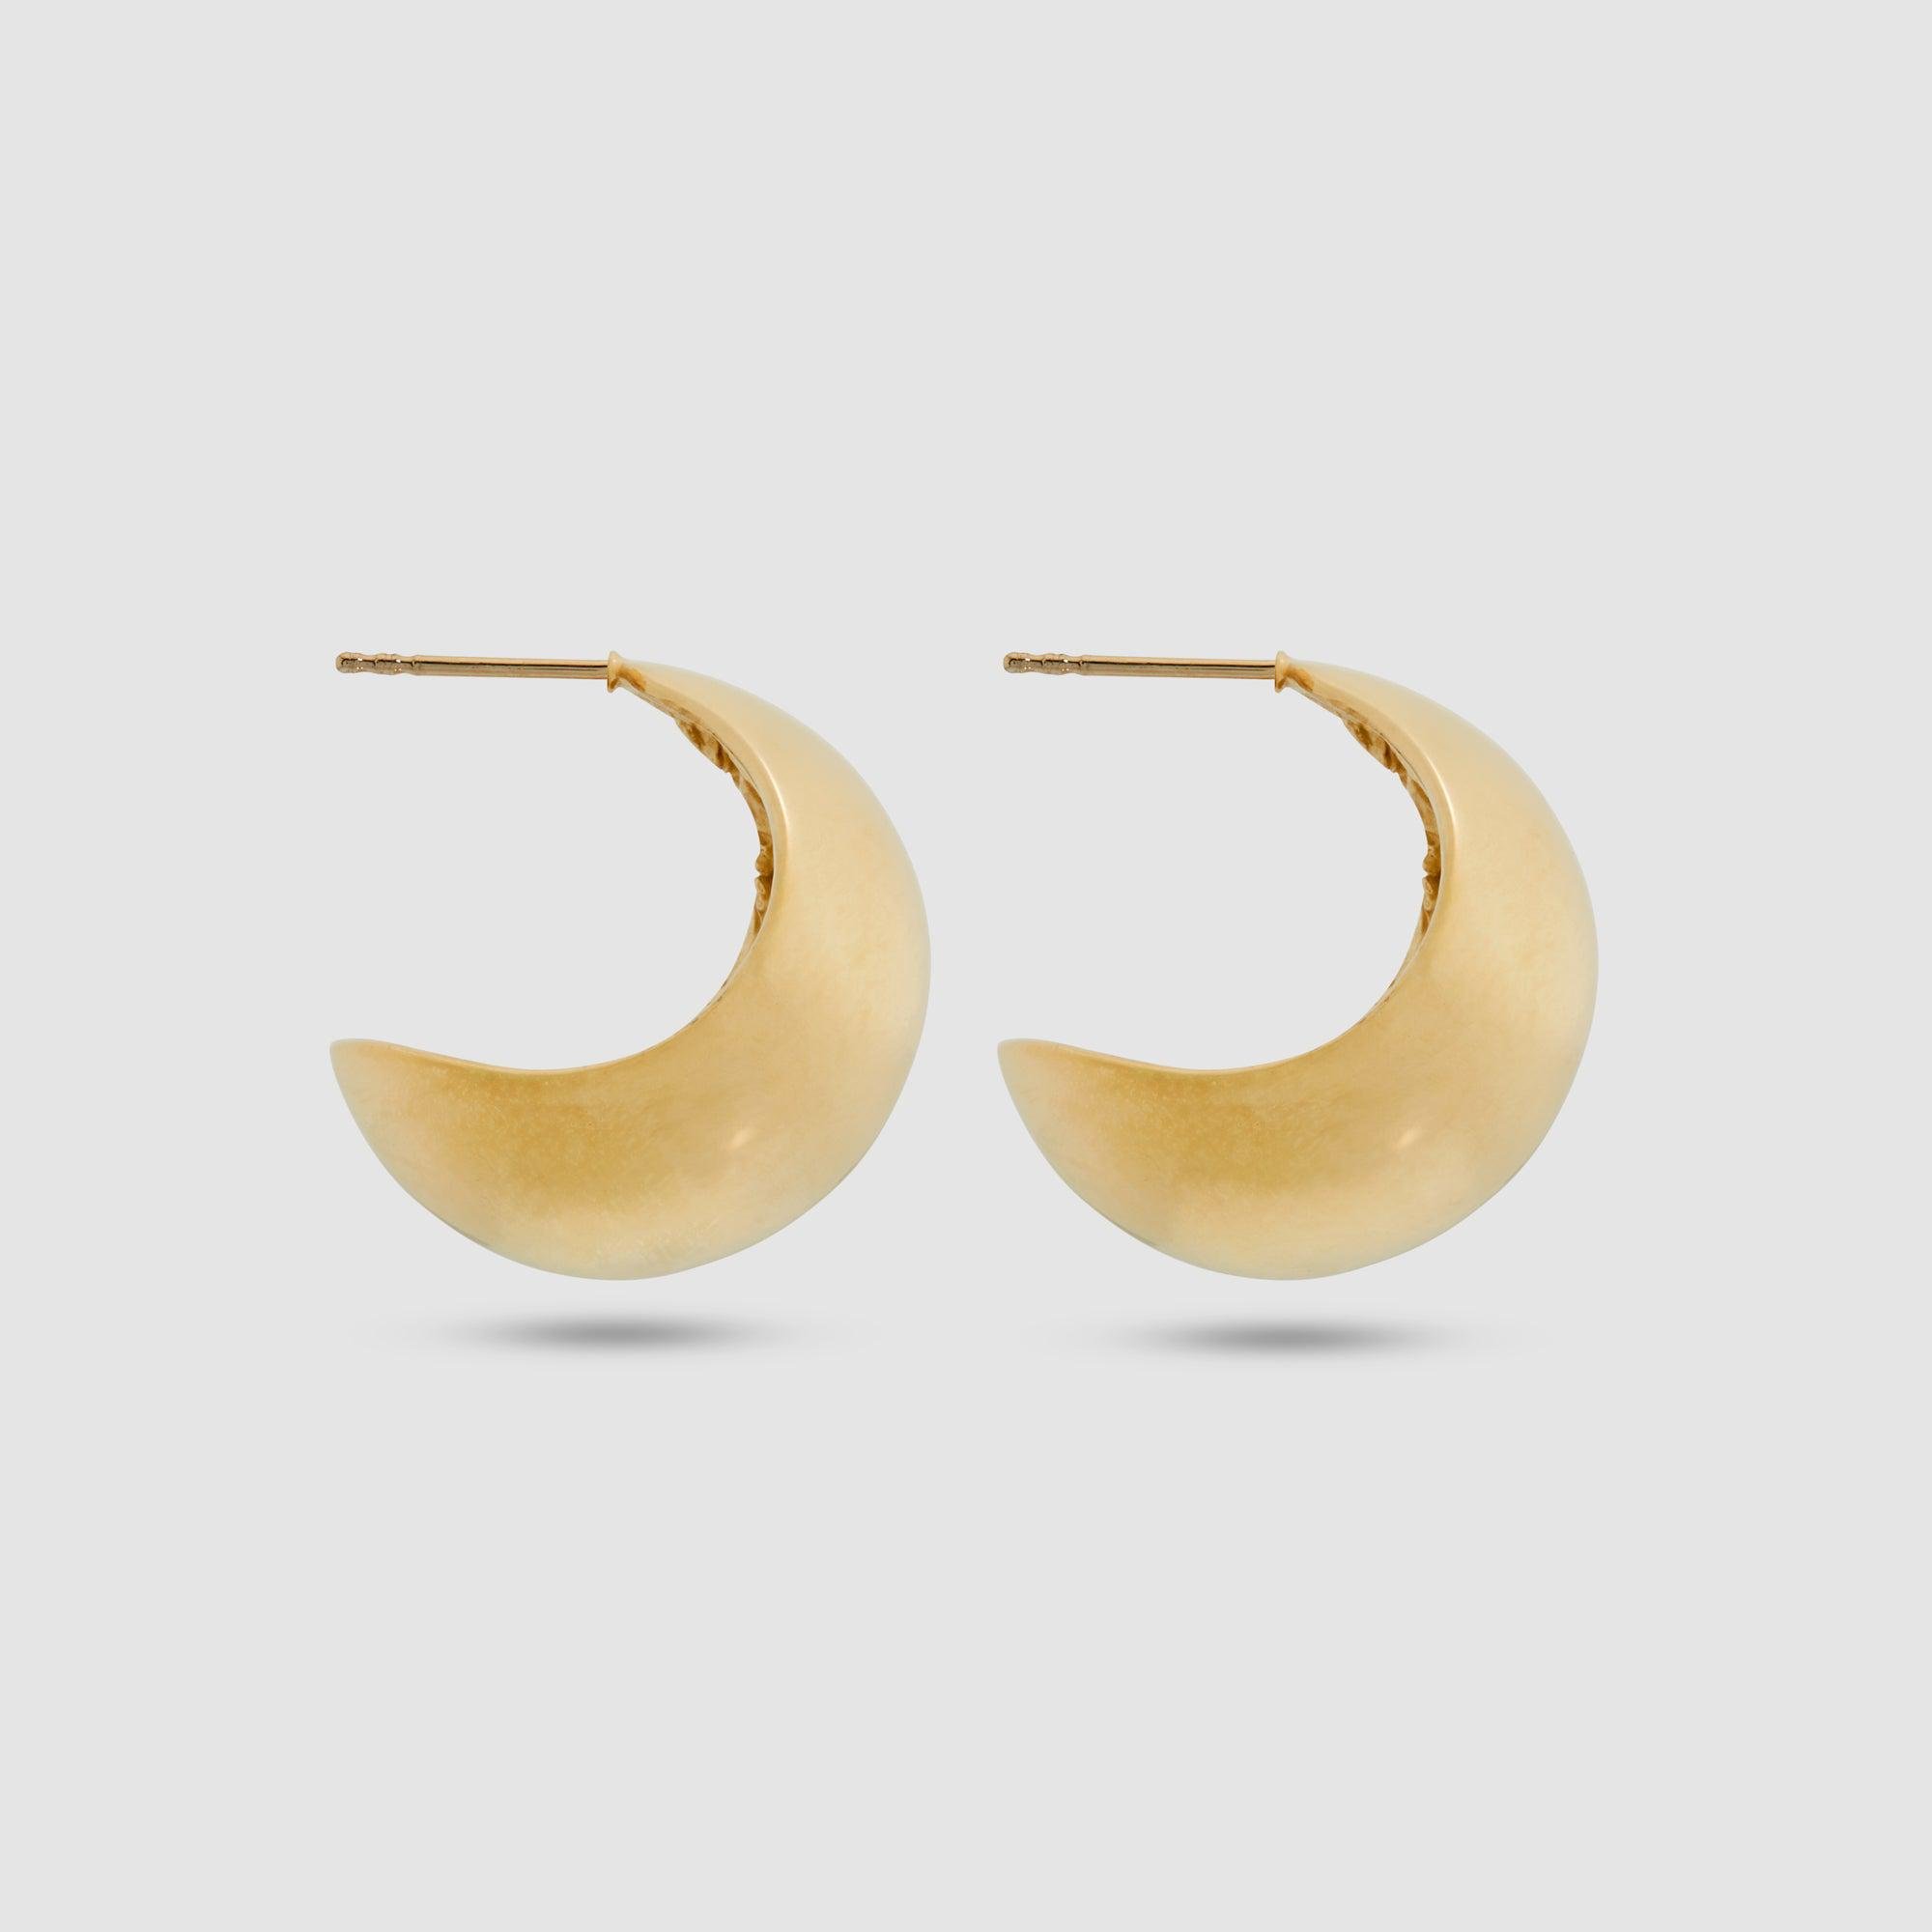 Completedworks - Hoop Earrings by COMPLETEDWORKS